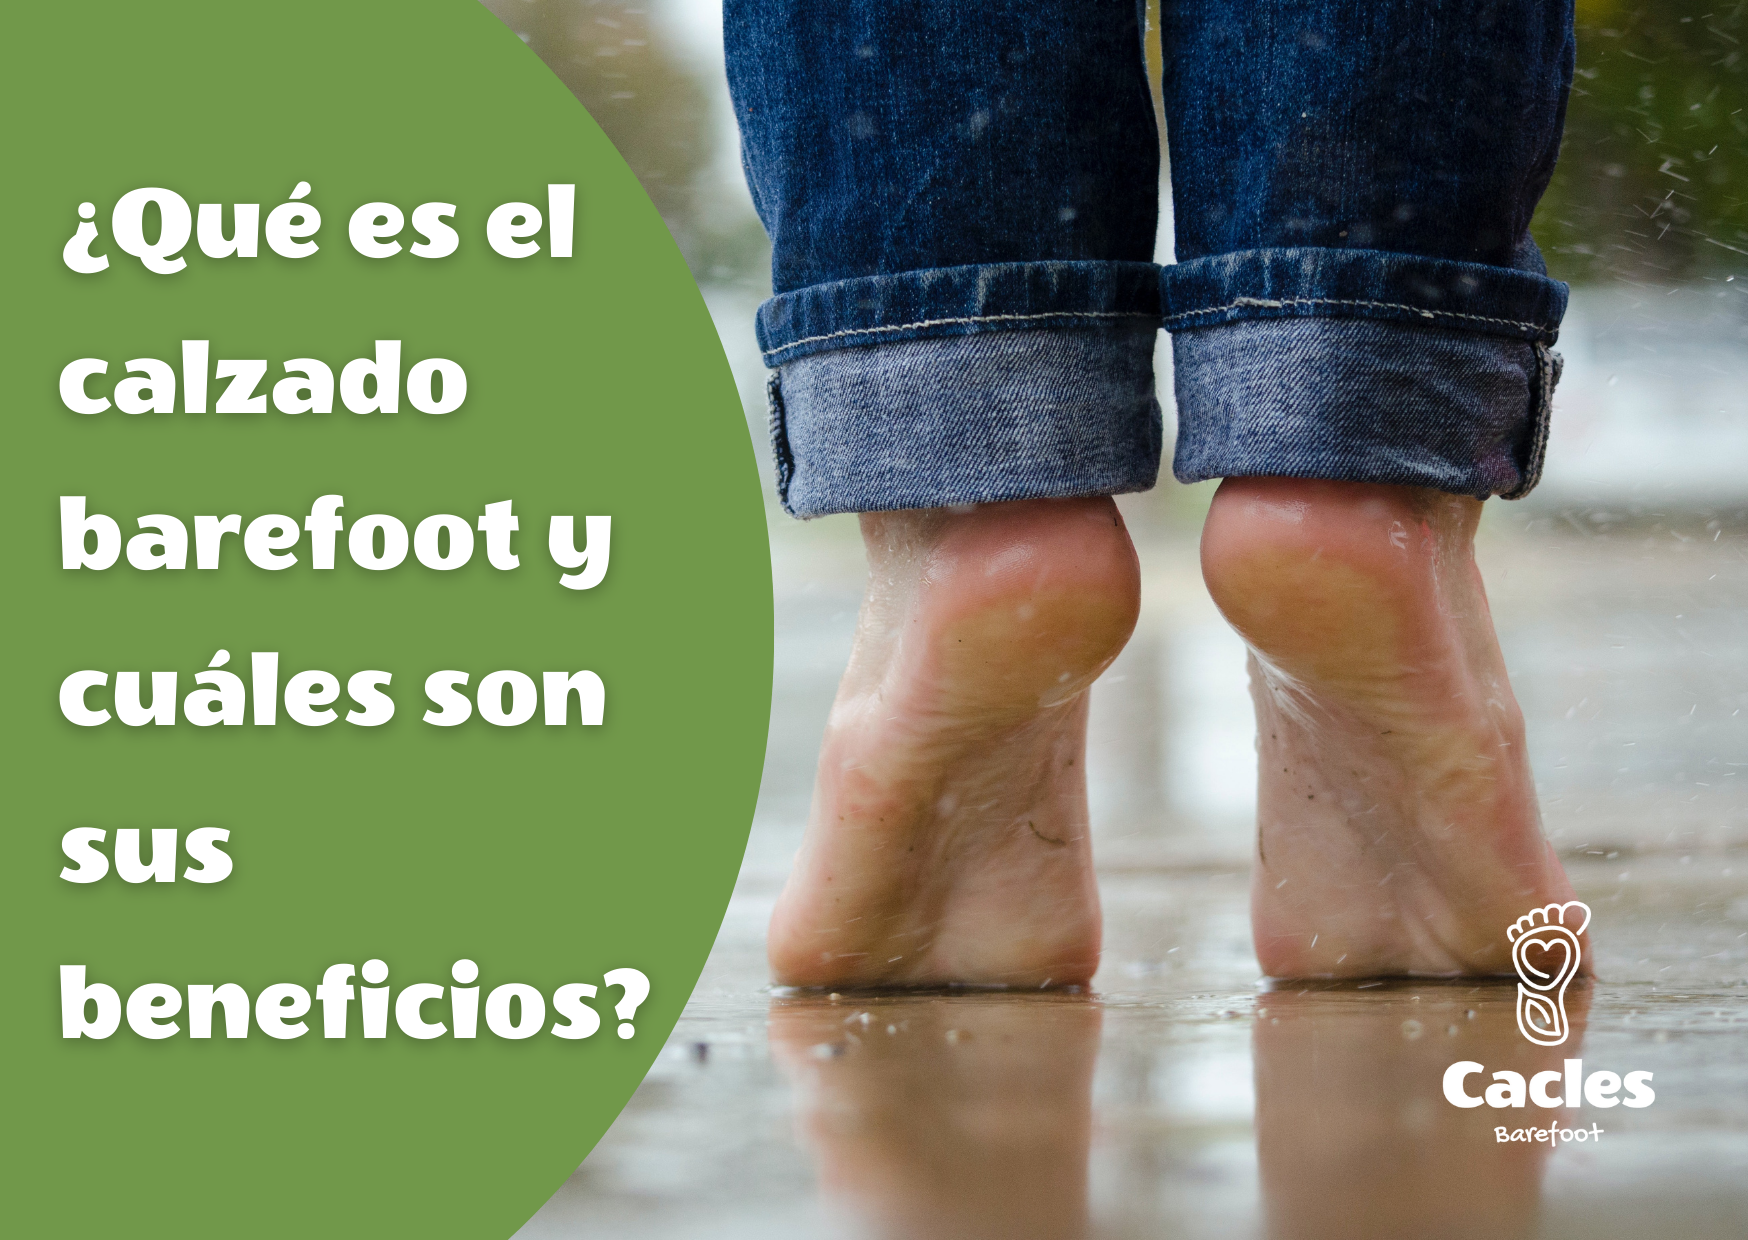 Usas calzado 'barefoot'? Cuidado, no es apto para todos los pies